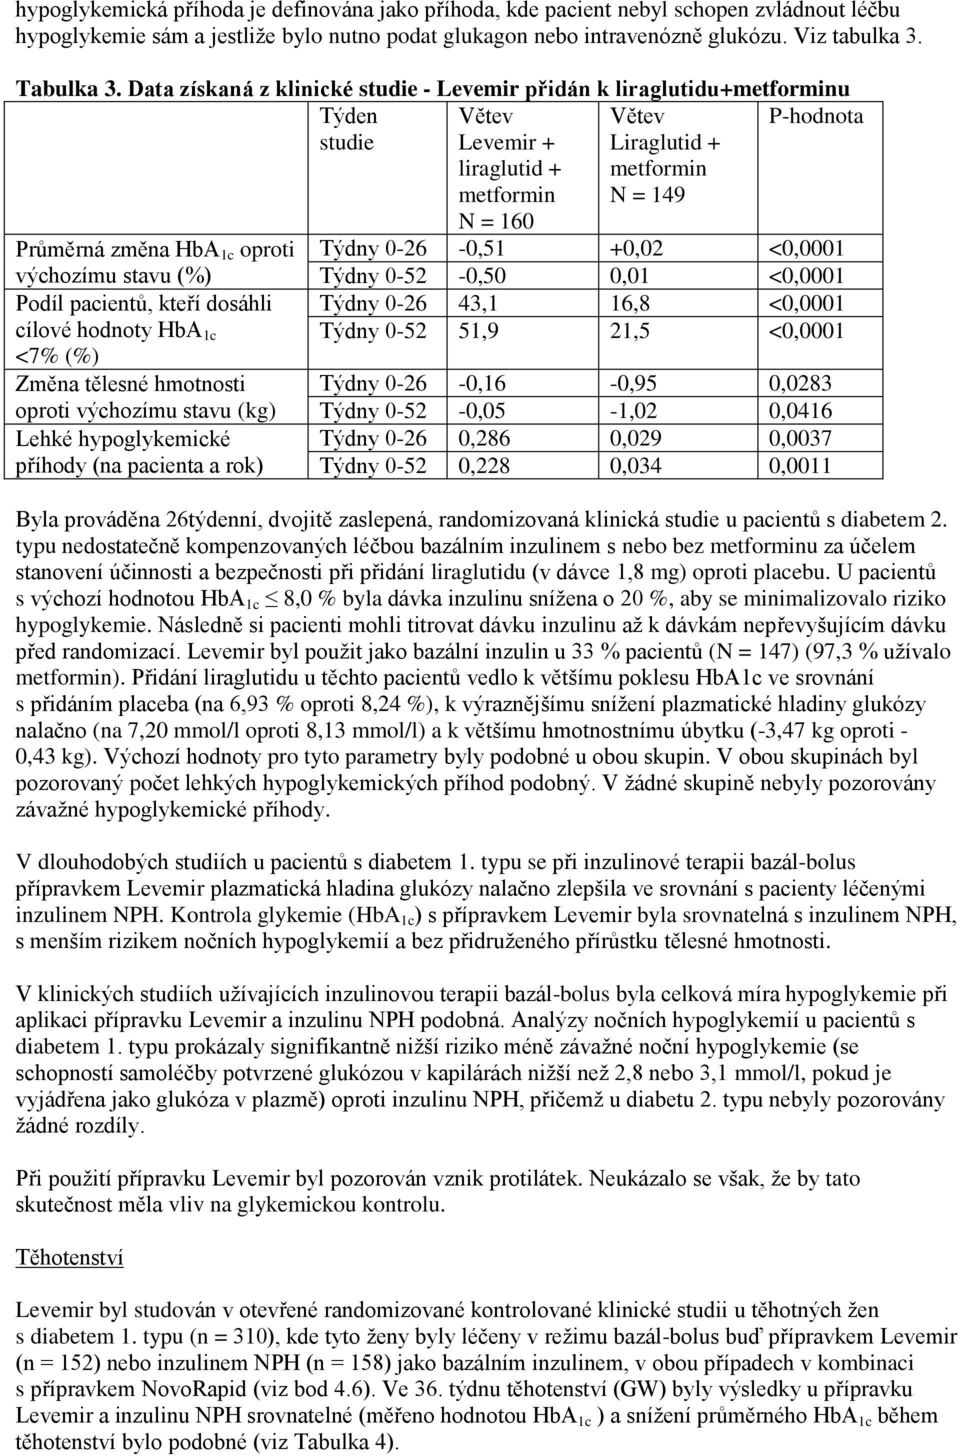 <7% (%) Změna tělesné hmotnosti oproti výchozímu stavu (kg) Lehké hypoglykemické příhody (na pacienta a rok) Větev Levemir + liraglutid + metformin N = 160 Větev Liraglutid + metformin N = 149 Týdny